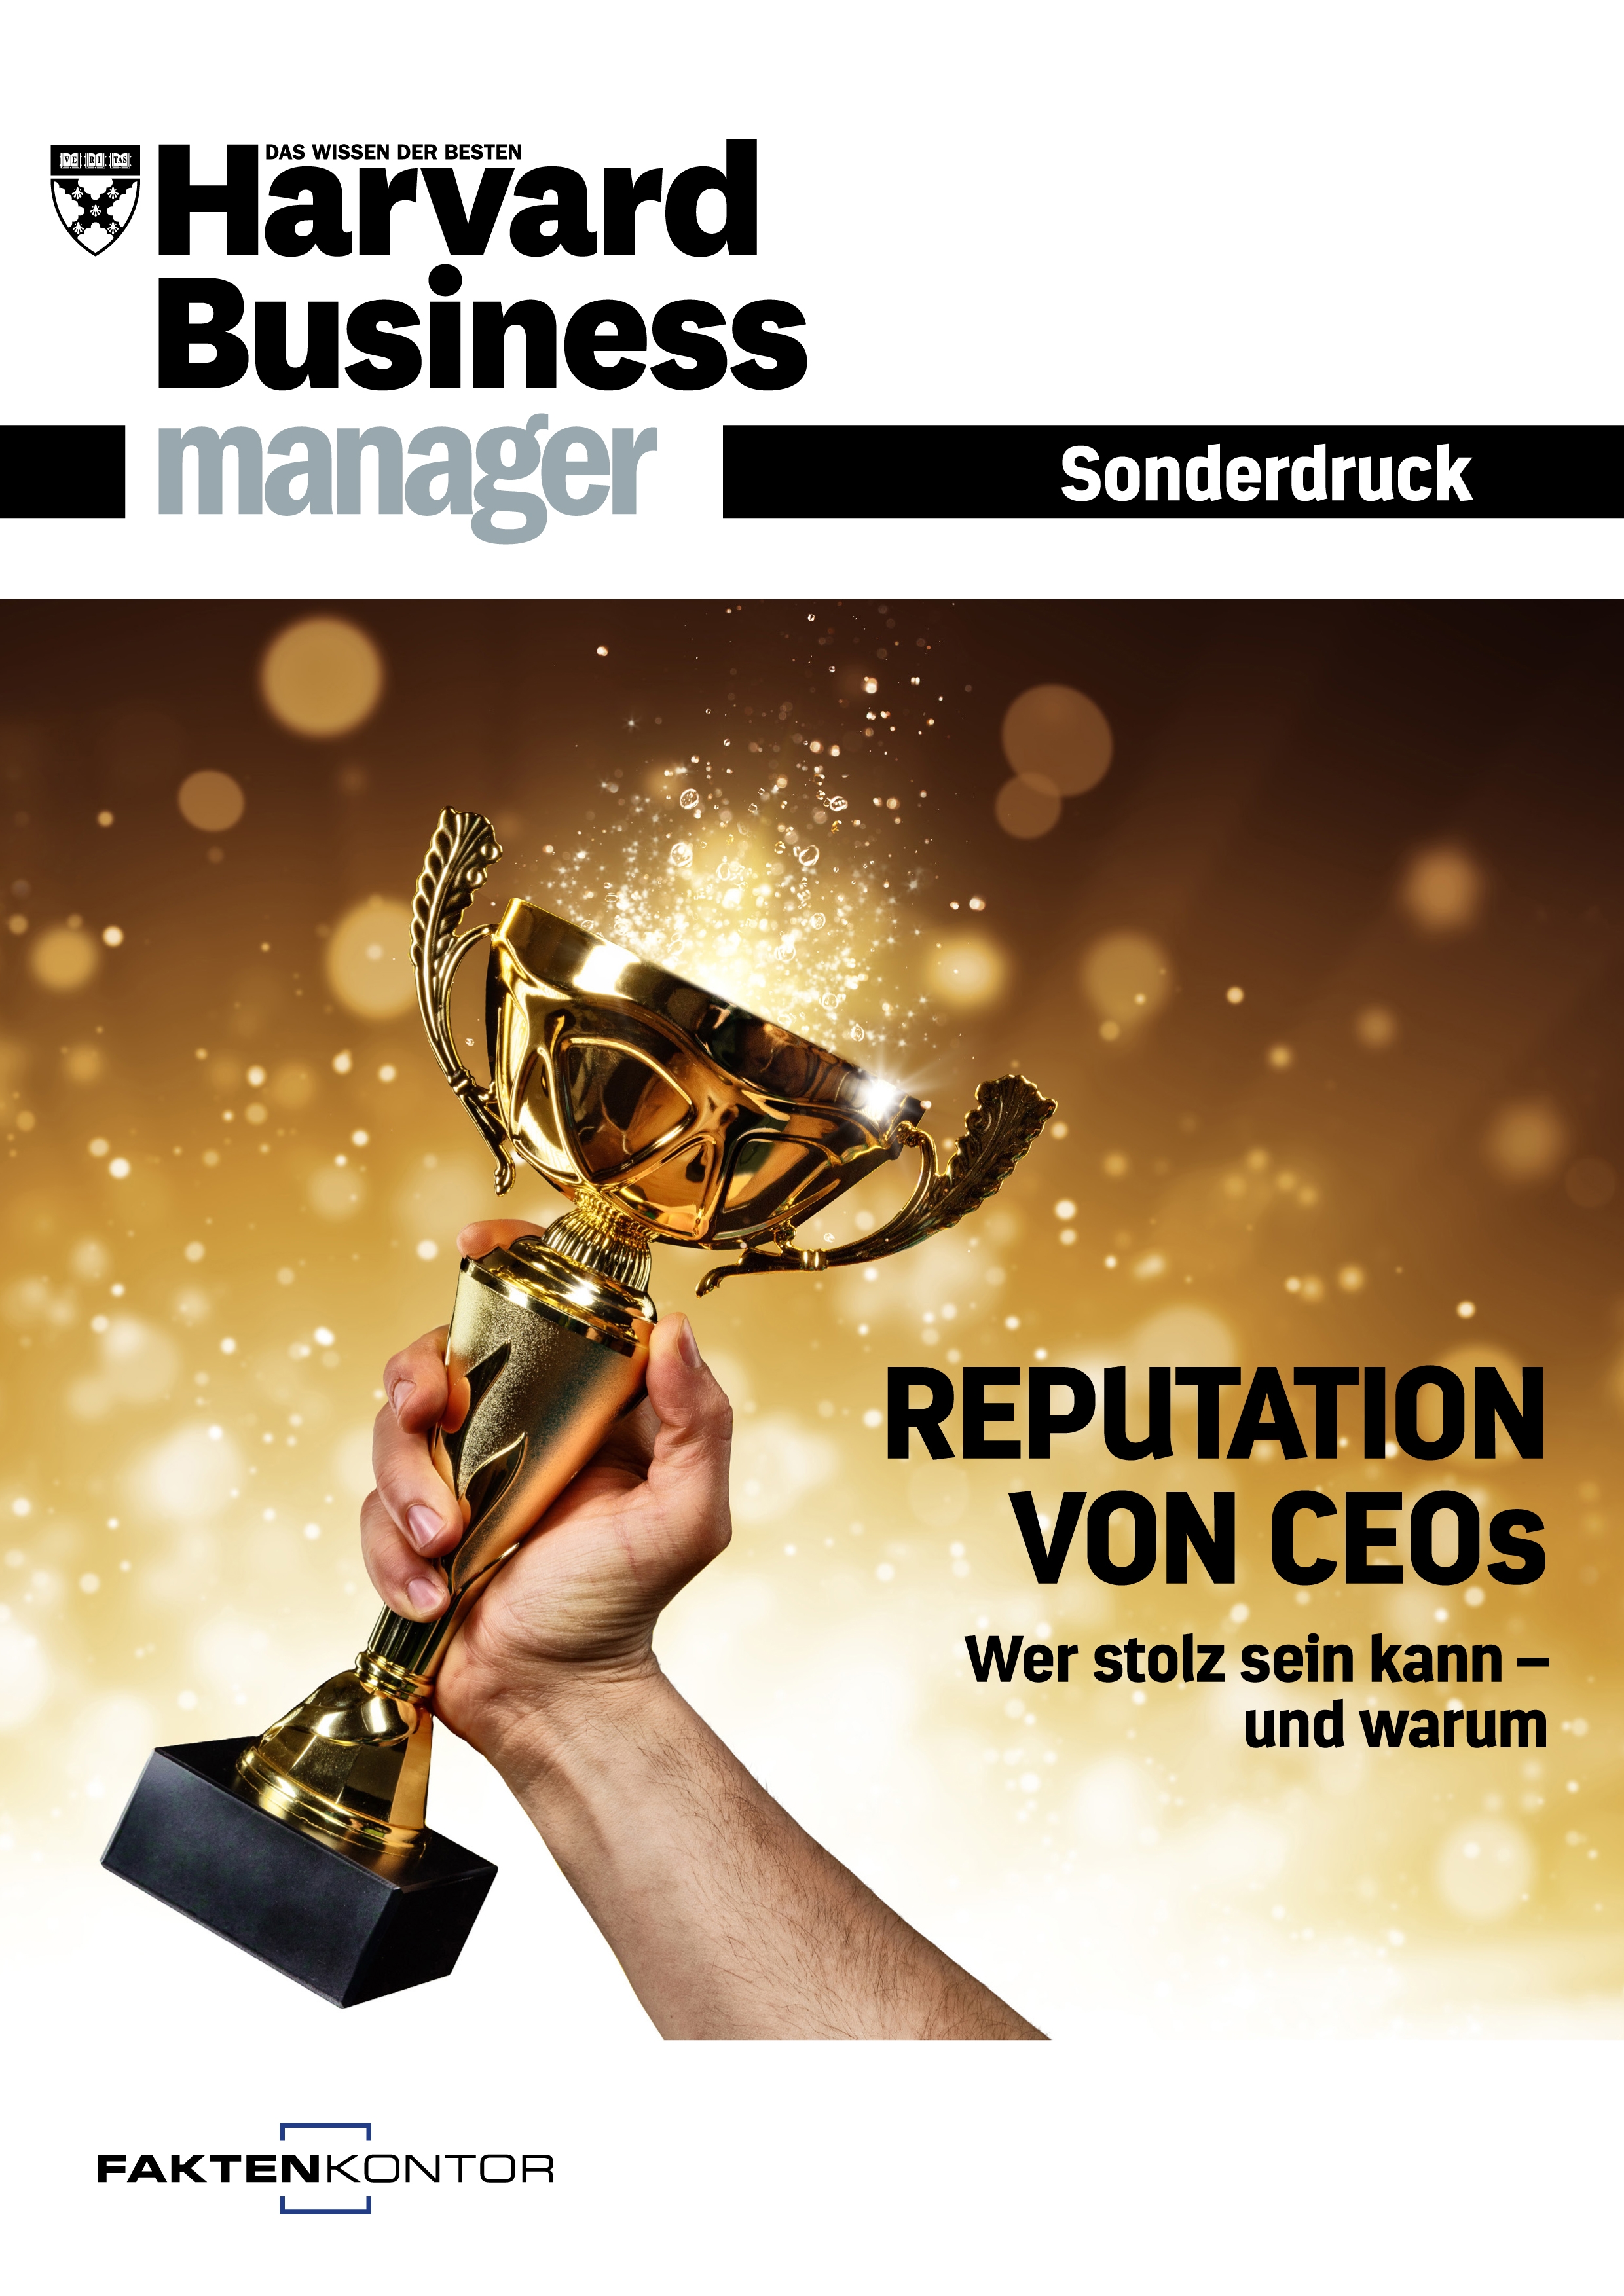 Titelbild Harvard Business Manager Sonderdruck "Reputation von CEOs"